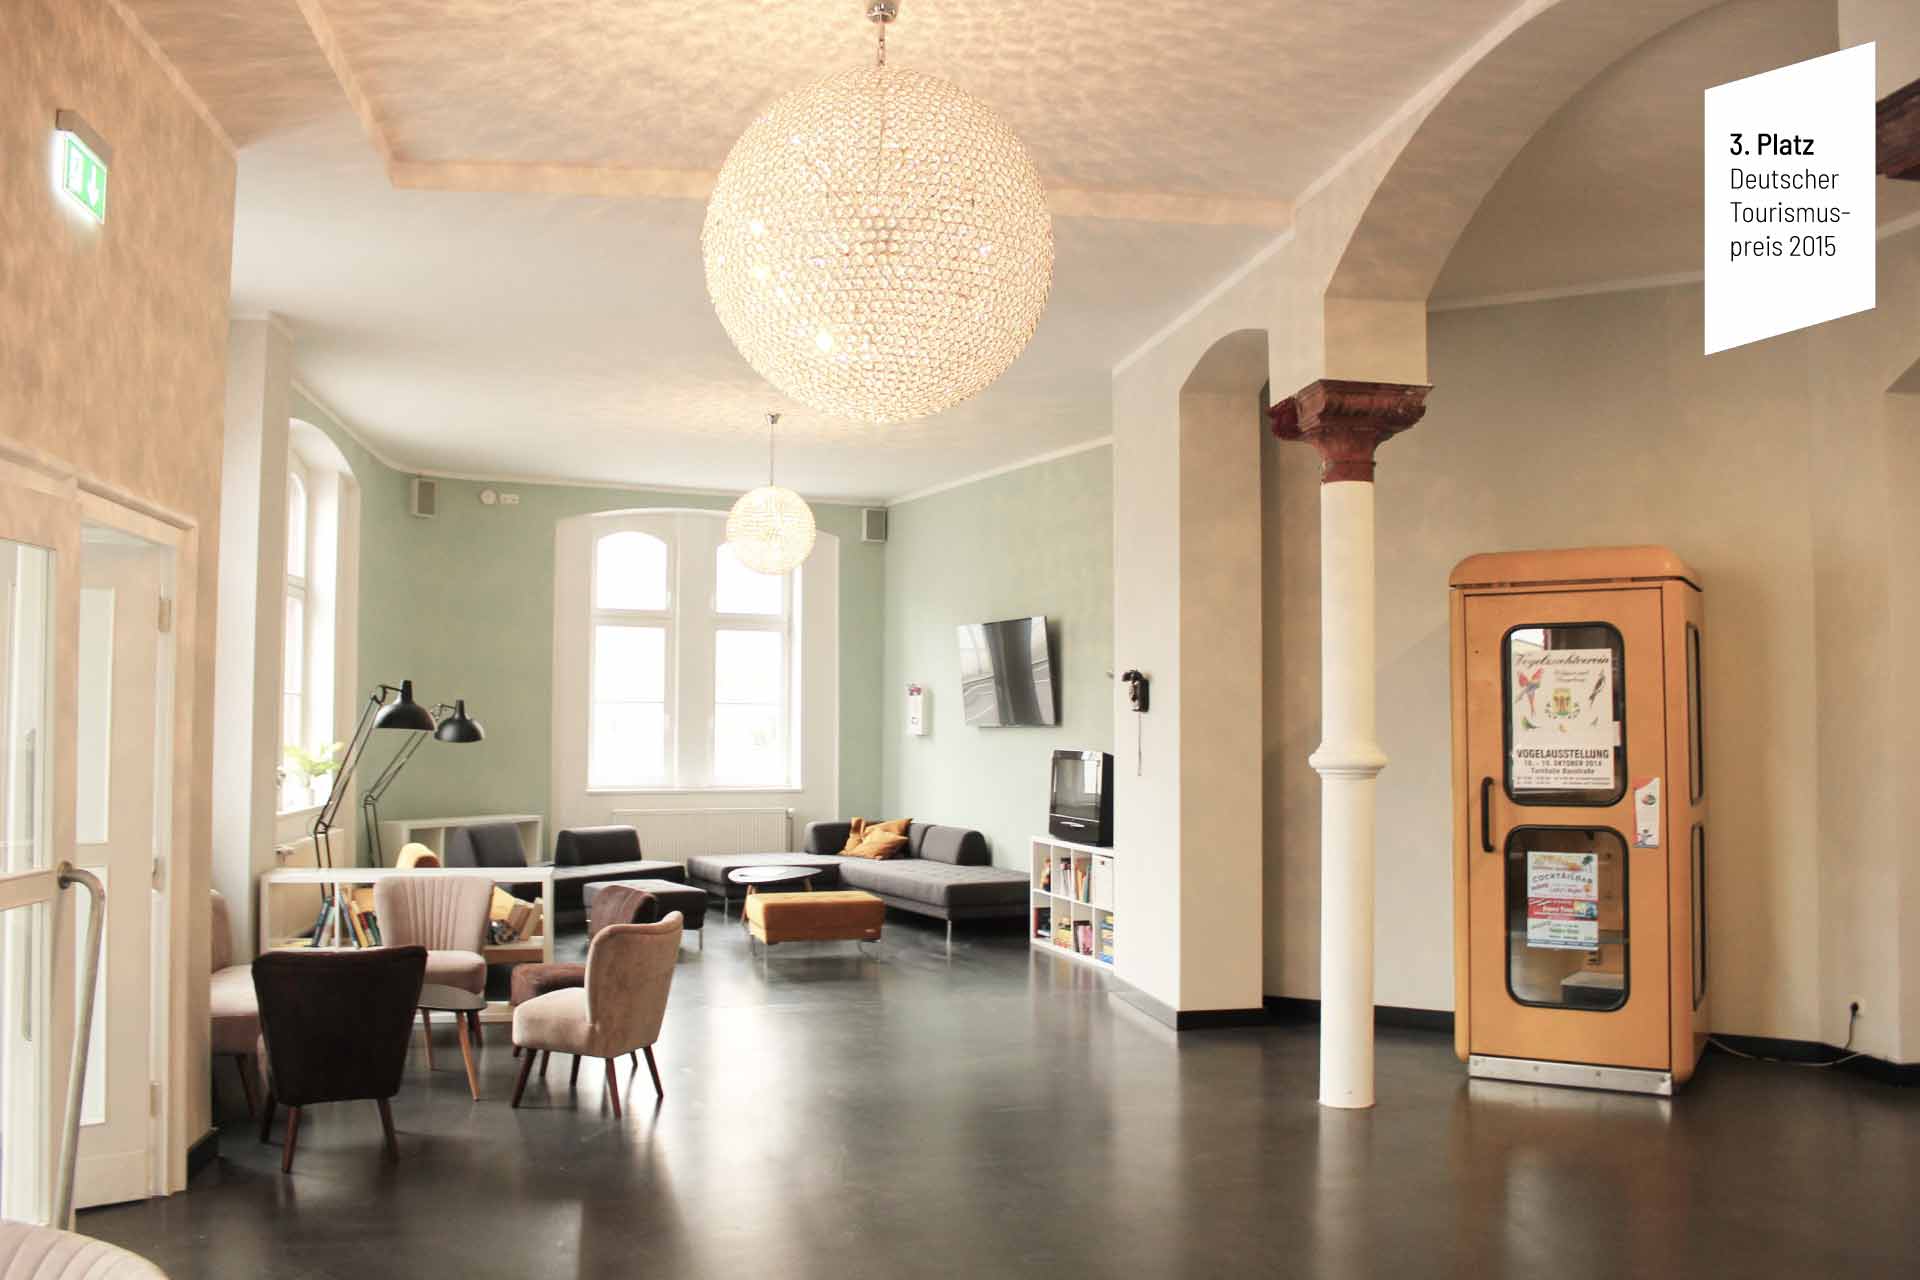 Foyer im Postel Wolgast bei Tageslicht, mit Tischen und Stühlen, einer angeschalteten Lampe das Muster an die Decke wirft und einer Telefonzelle. Darauf ist ein weißes Feld mit der Aufschrift "3. Platz Deutscher Tourismuspreis 2015"